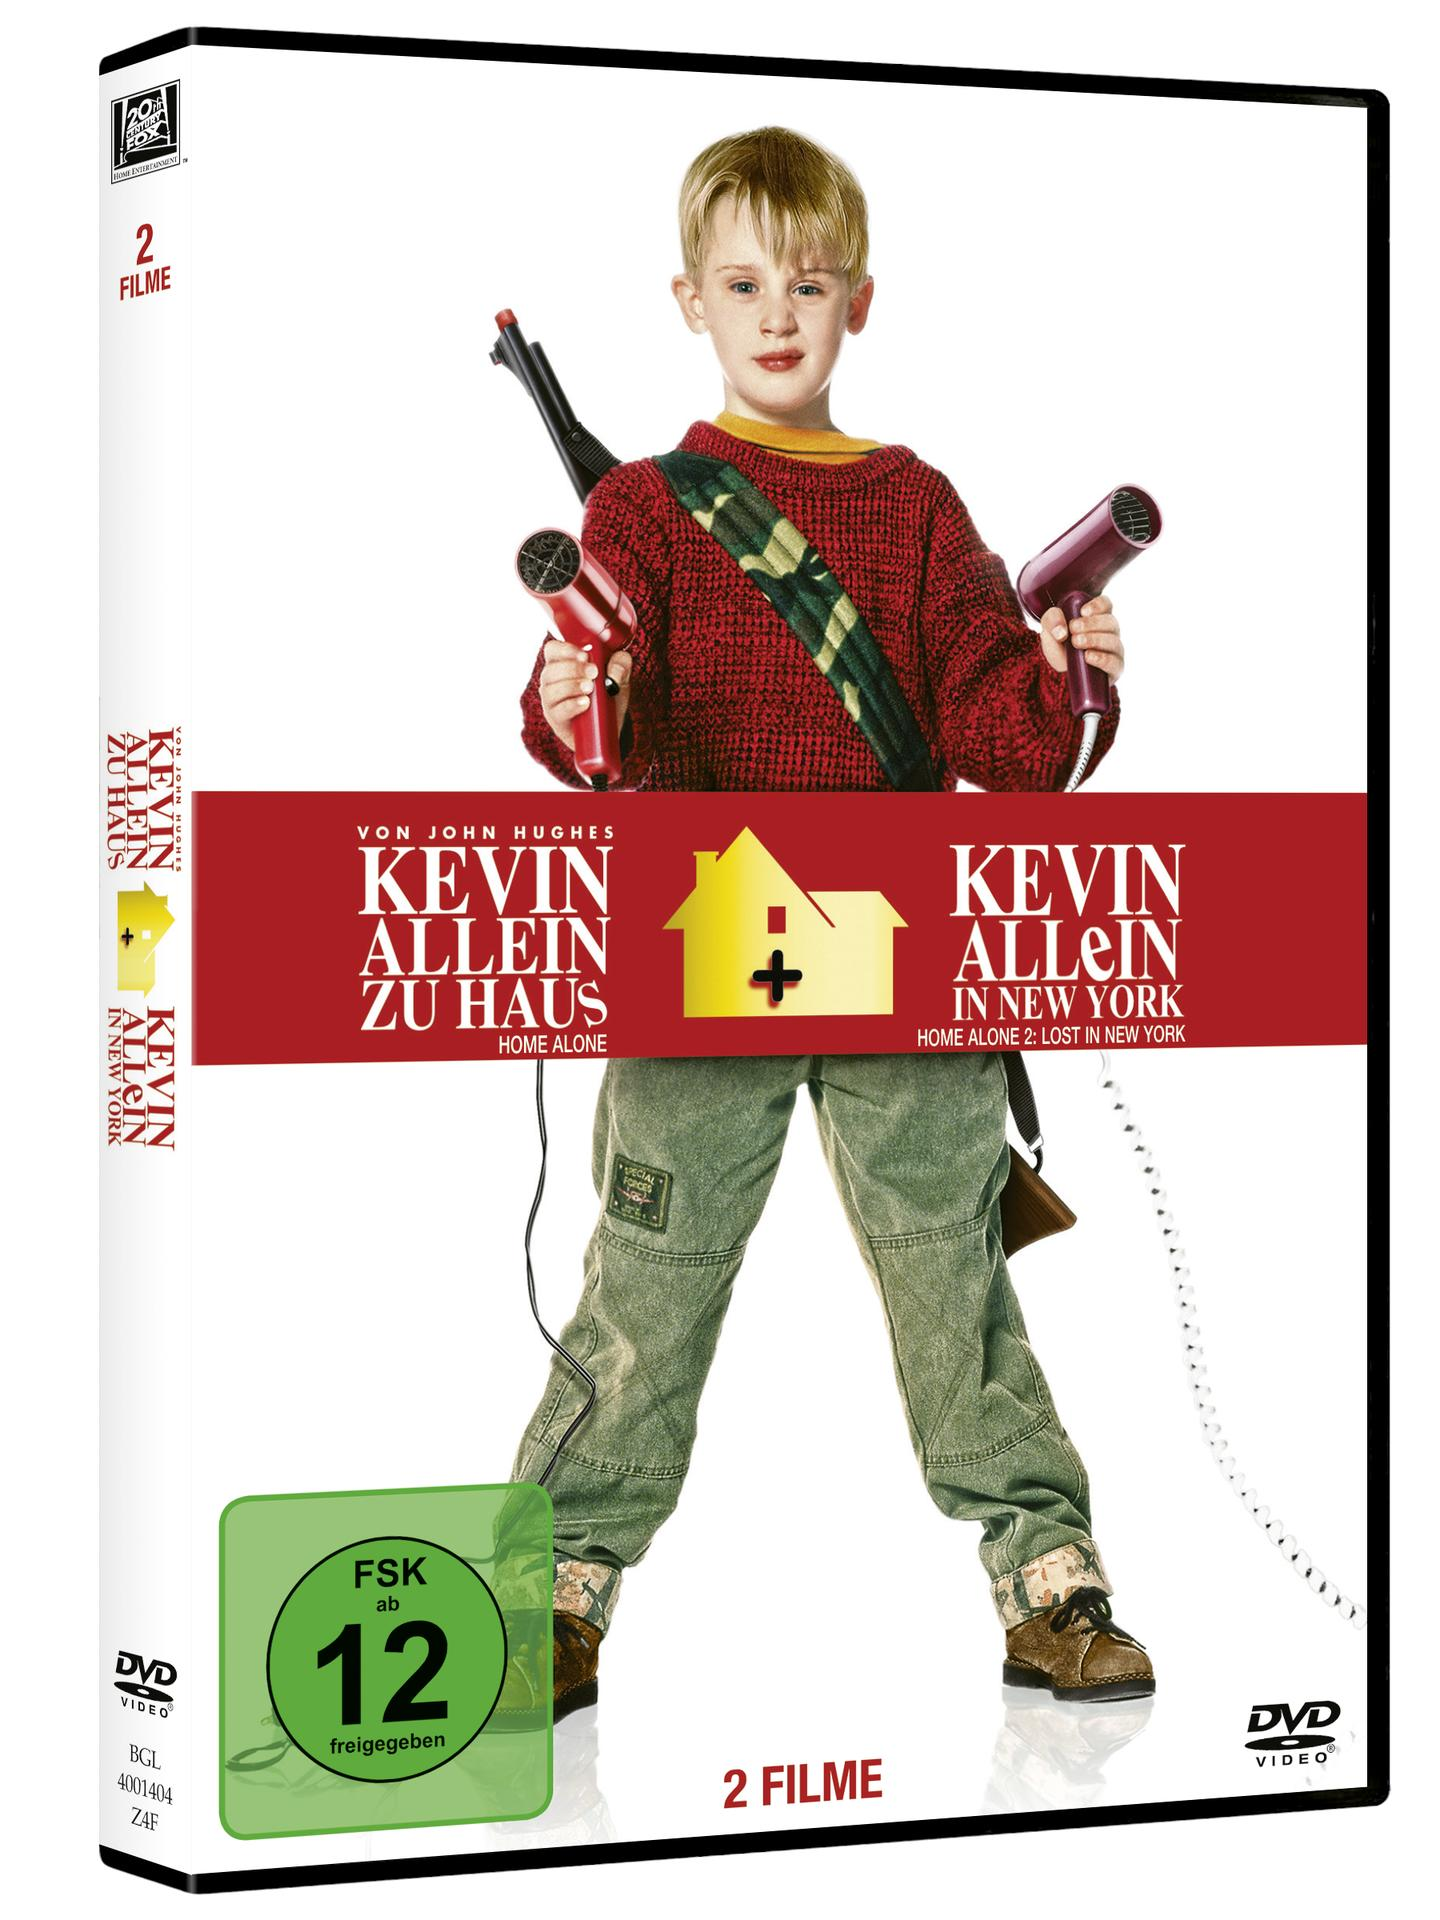 Kevin Allein York / Allein DVD Kevin Haus - - in New zu